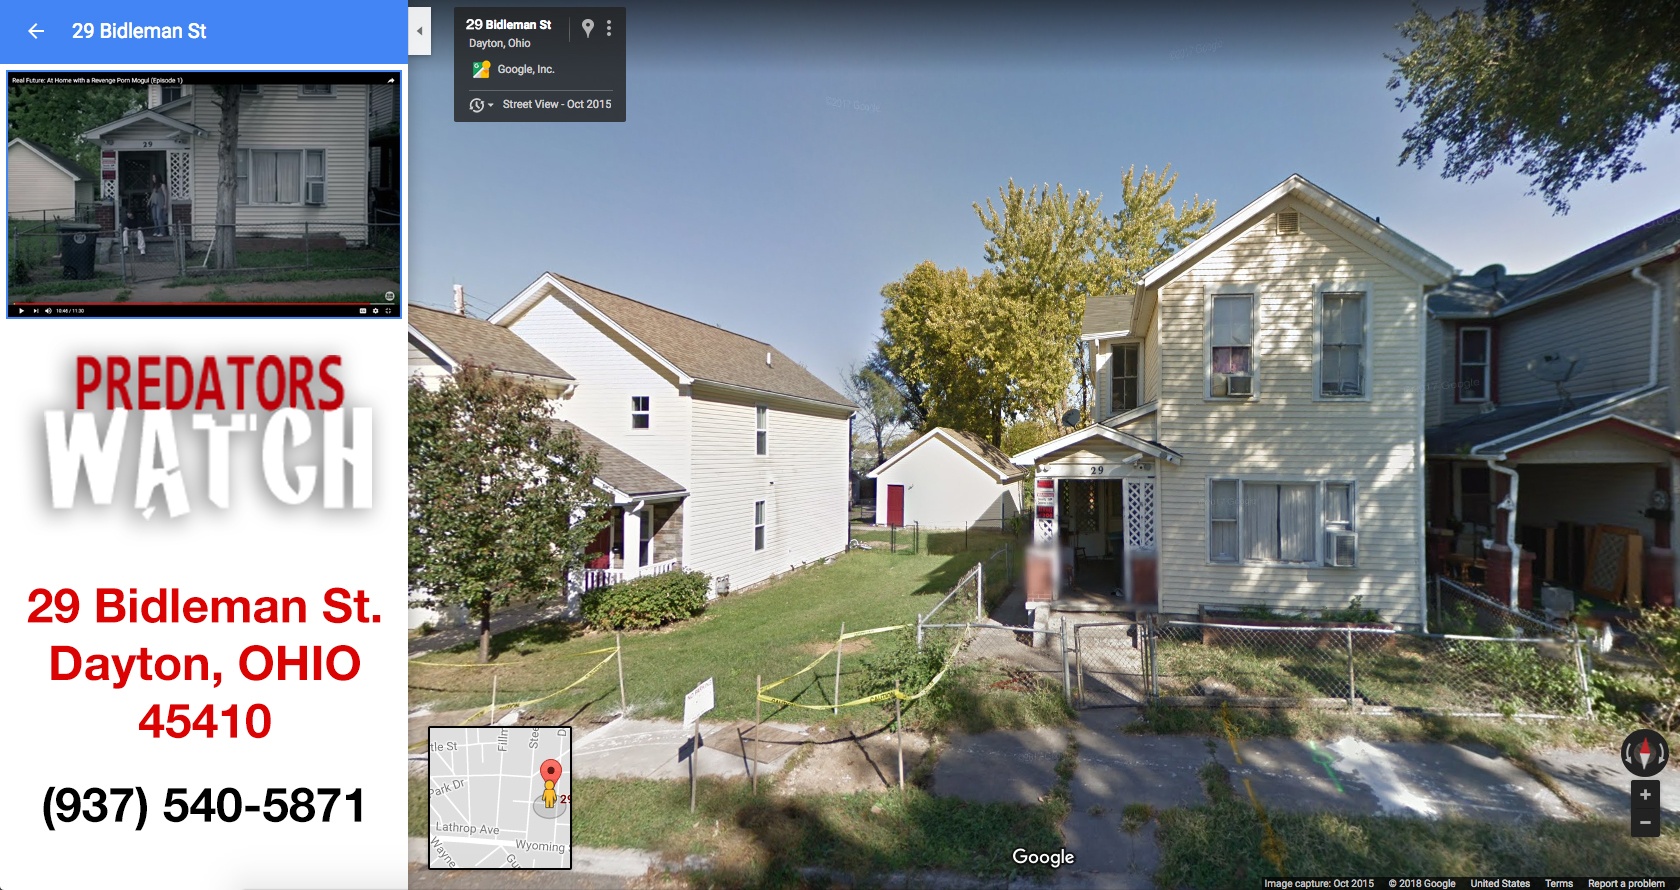 Scott Breitenstein Home Address: 29 Bidleman Street - Dayton, Ohio - 45410 - (937) 540-5871